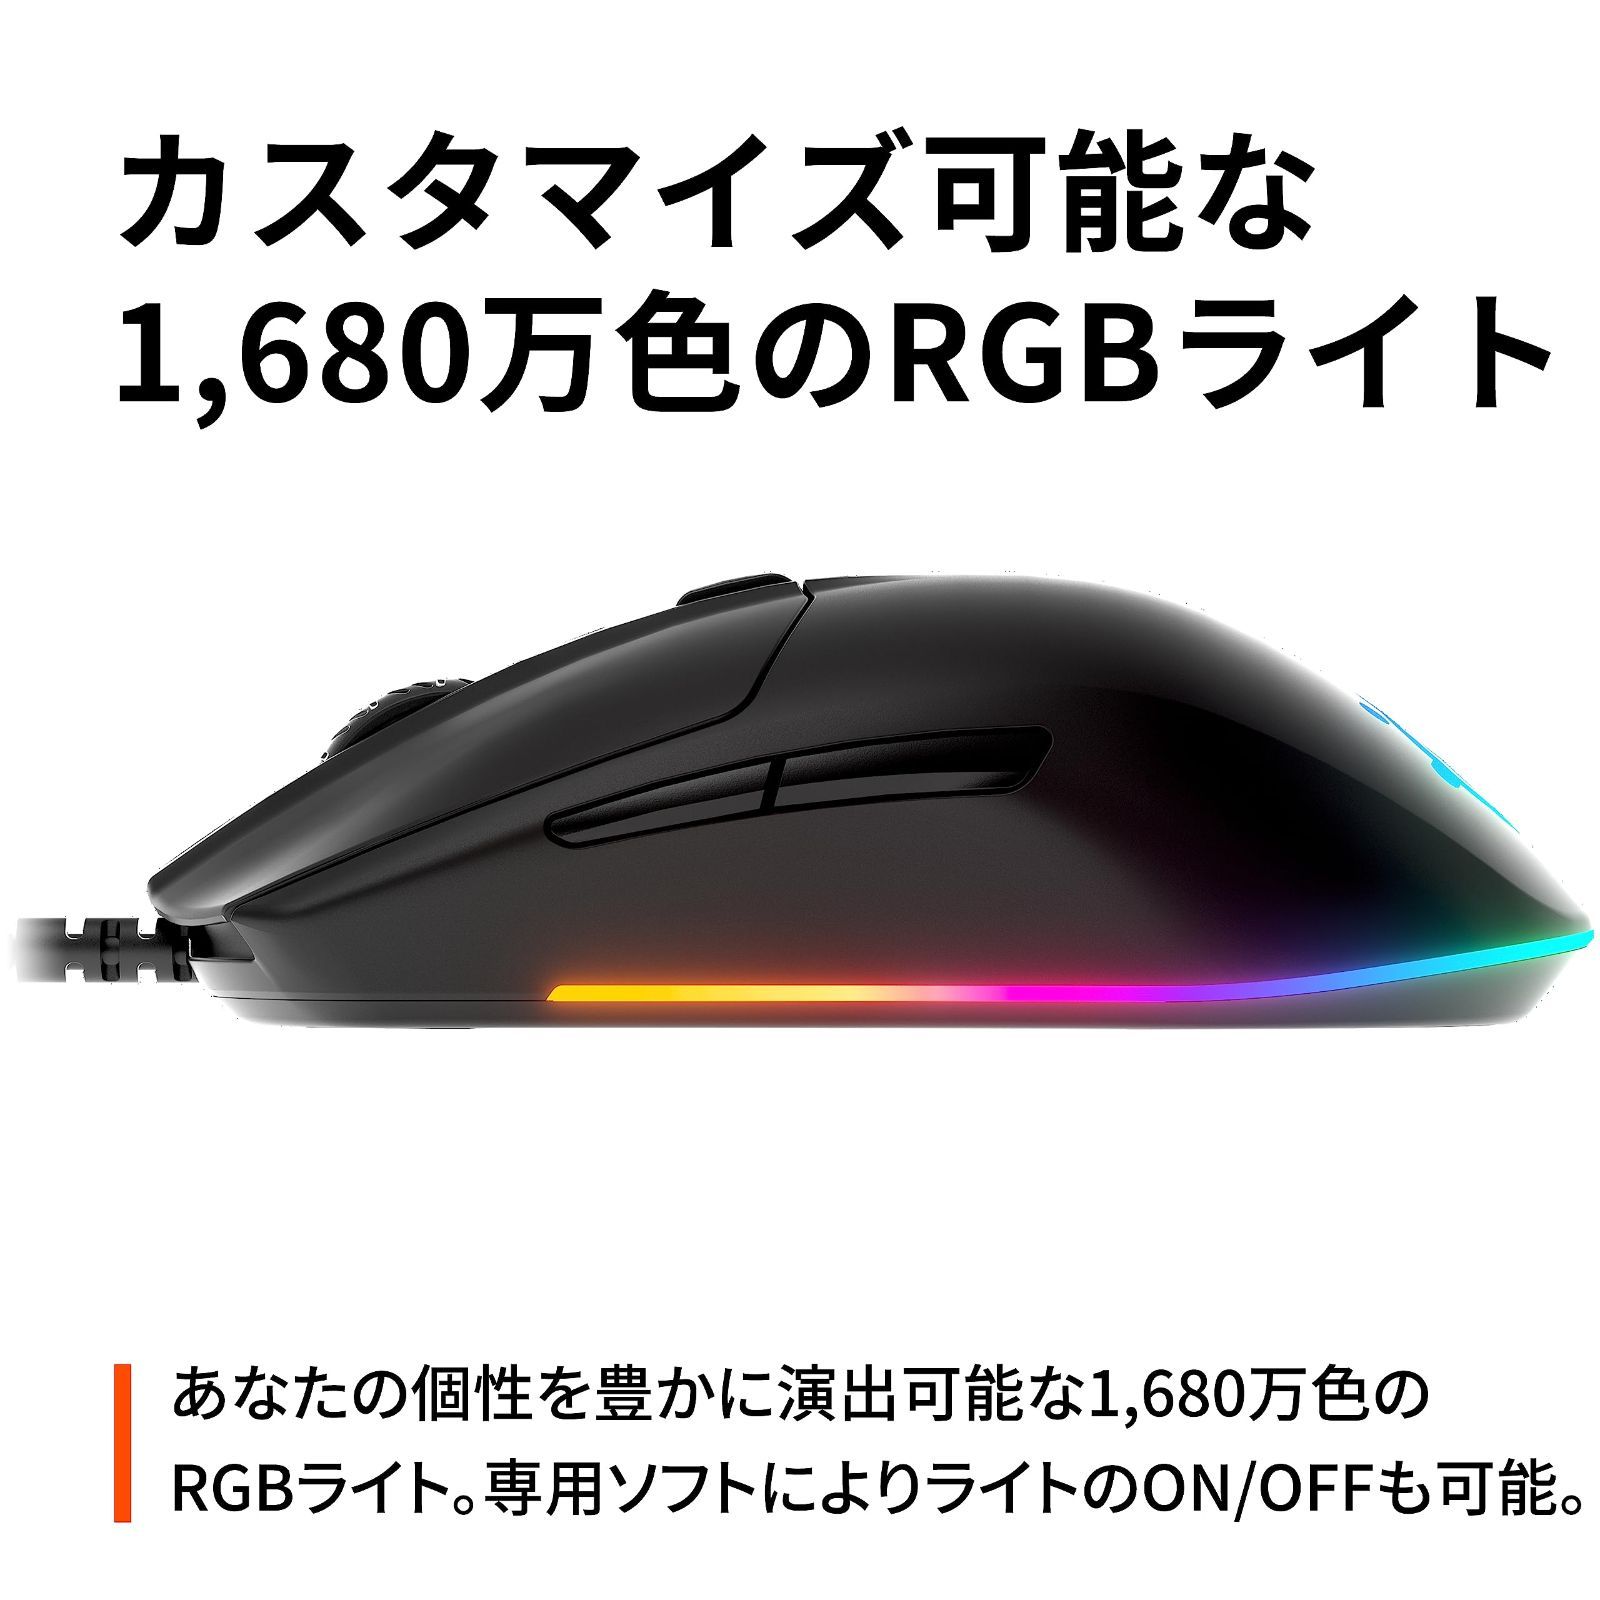 【特価商品】SteelSeries USB ゲーミングマウス 有線 軽量 低遅延